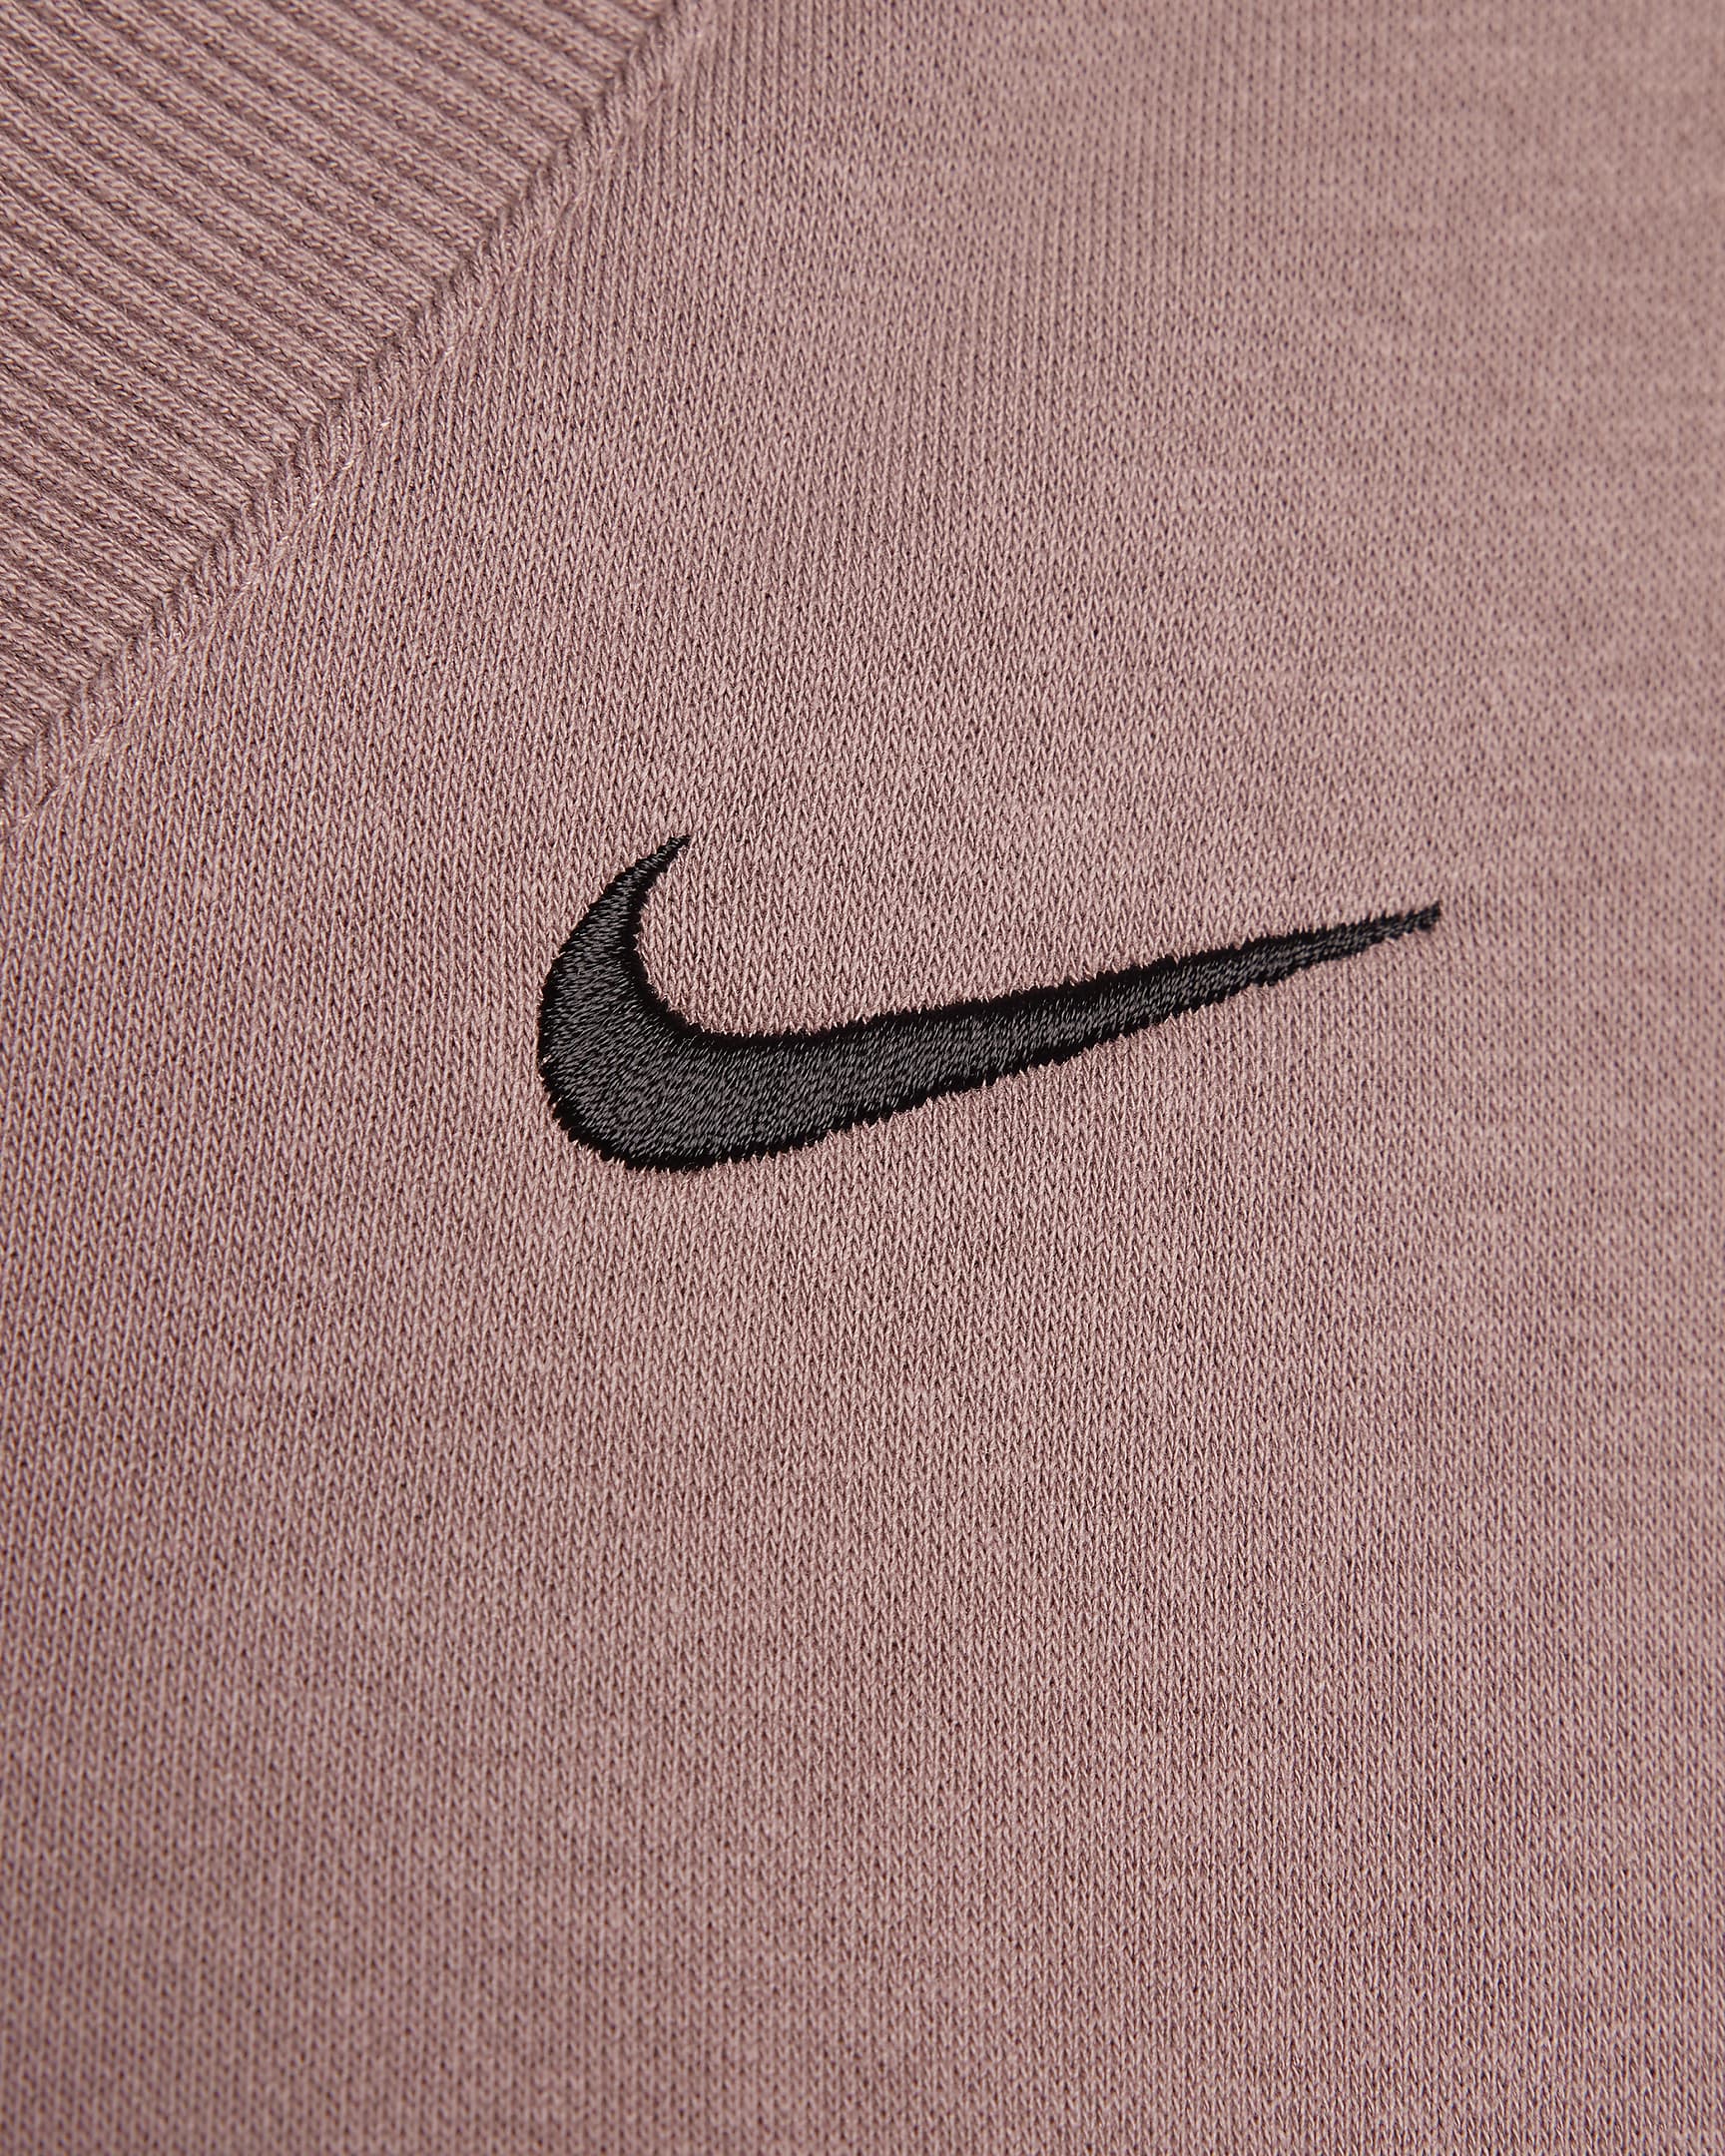 Nike Sportswear Phoenix Fleece Women's Cropped V-Neck Top. Nike UK